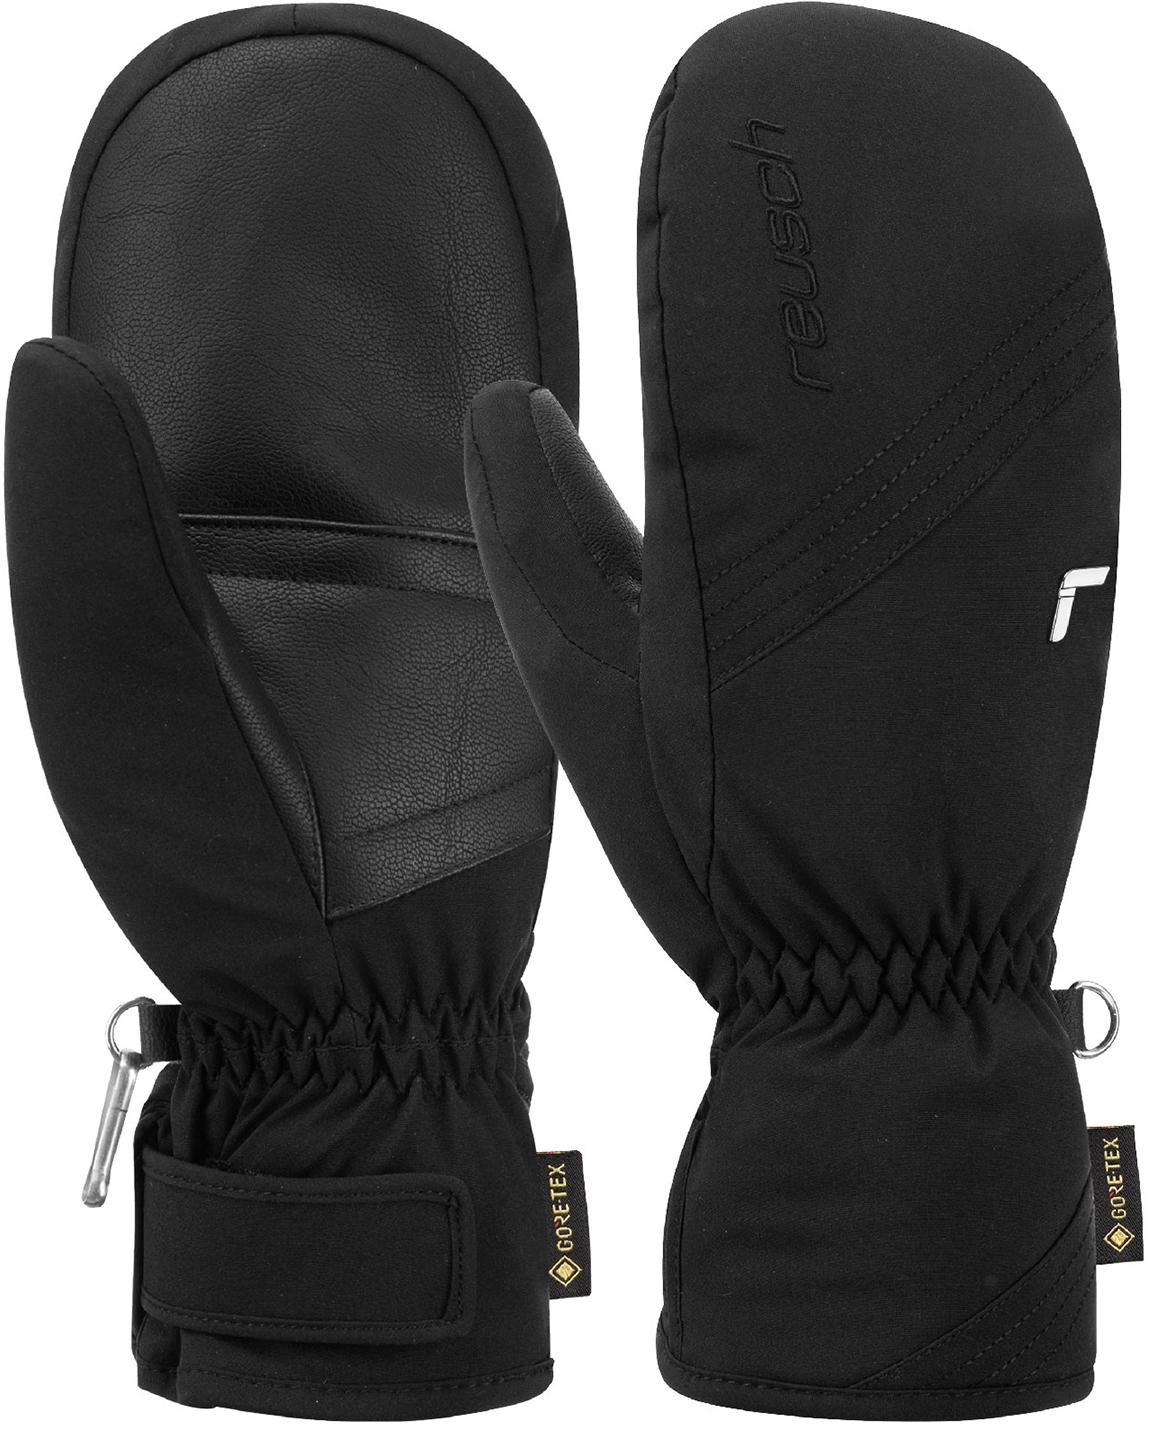 Reusch Susan GORE-TEX Mitten Outdoorhandschuhe 7700 black im Online Shop  von SportScheck kaufen | Handschuhe